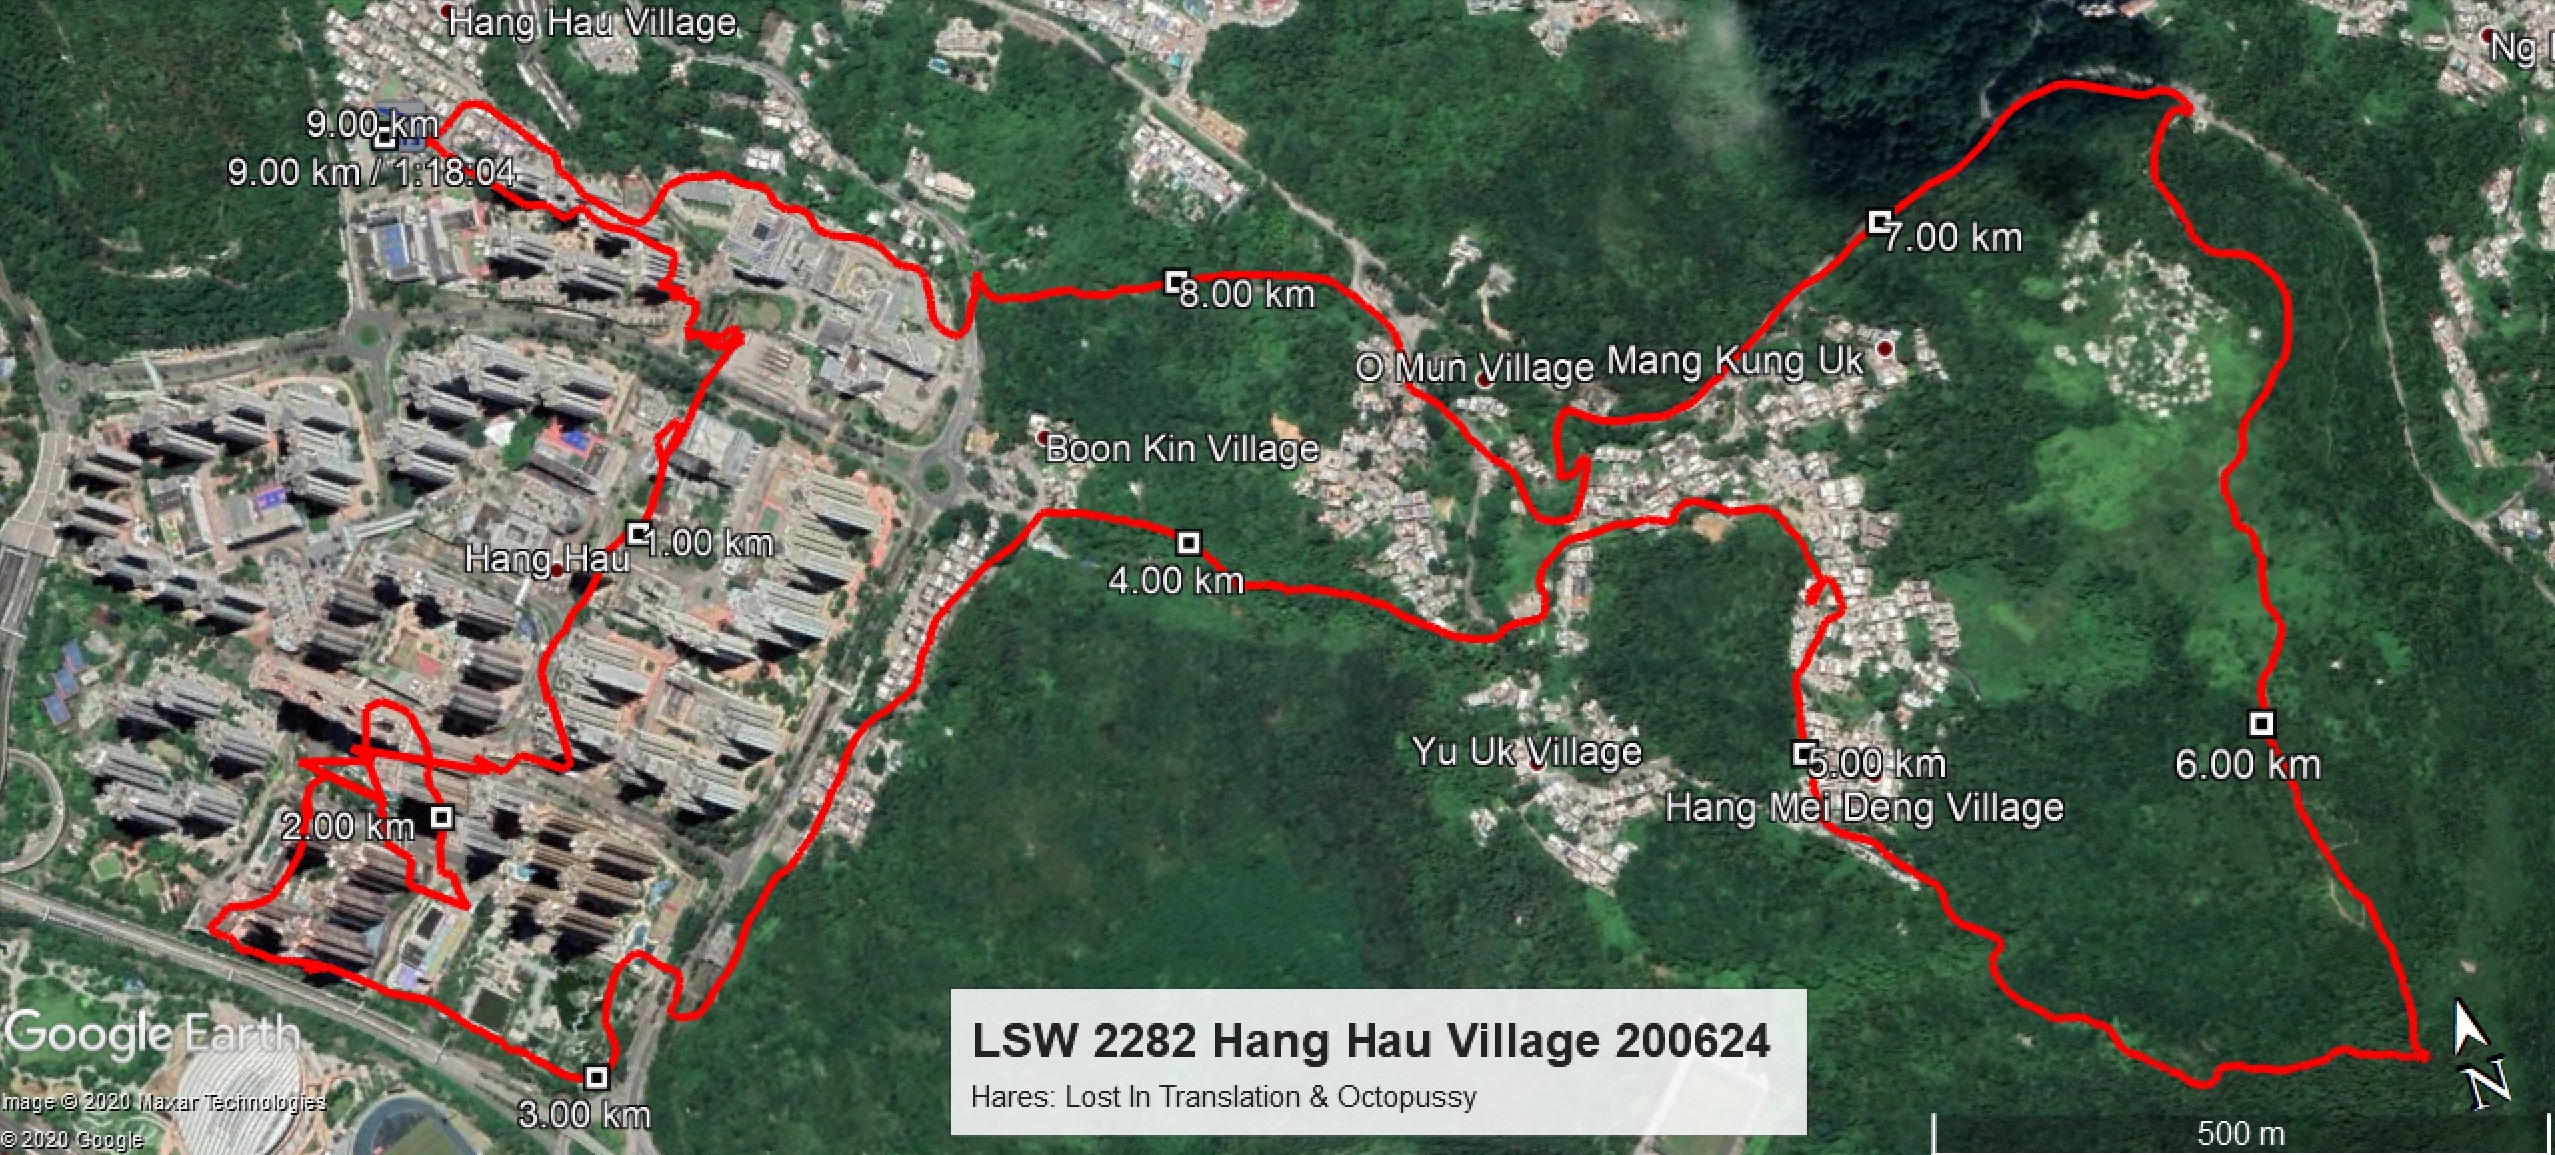 Hang Hau Village 200624 9.00km 78mins